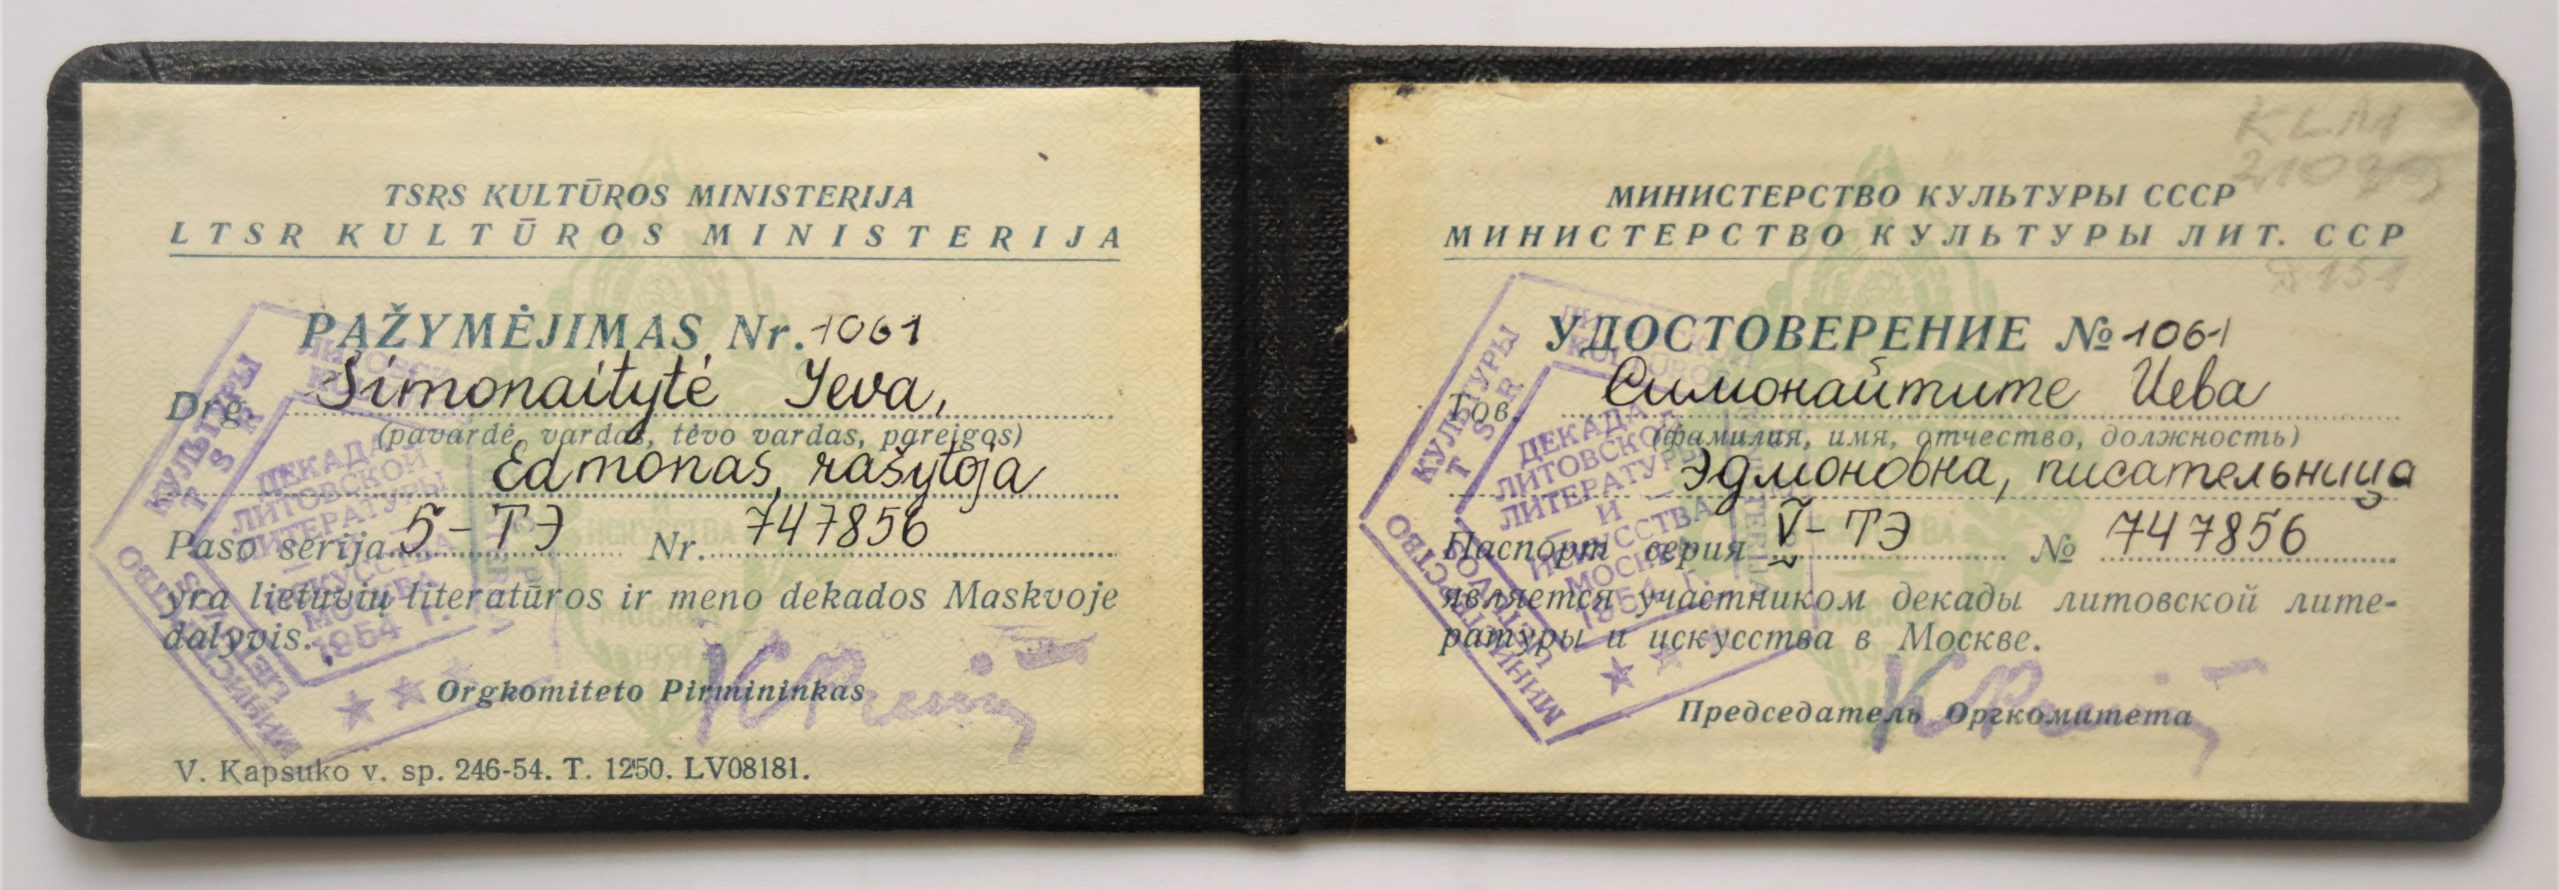 Lietuvių literatūros ir meno dekados Maskvoje dalyvio pažymėjimas Nr. 1061. Vilnius, 1954 m. MLLM 21089